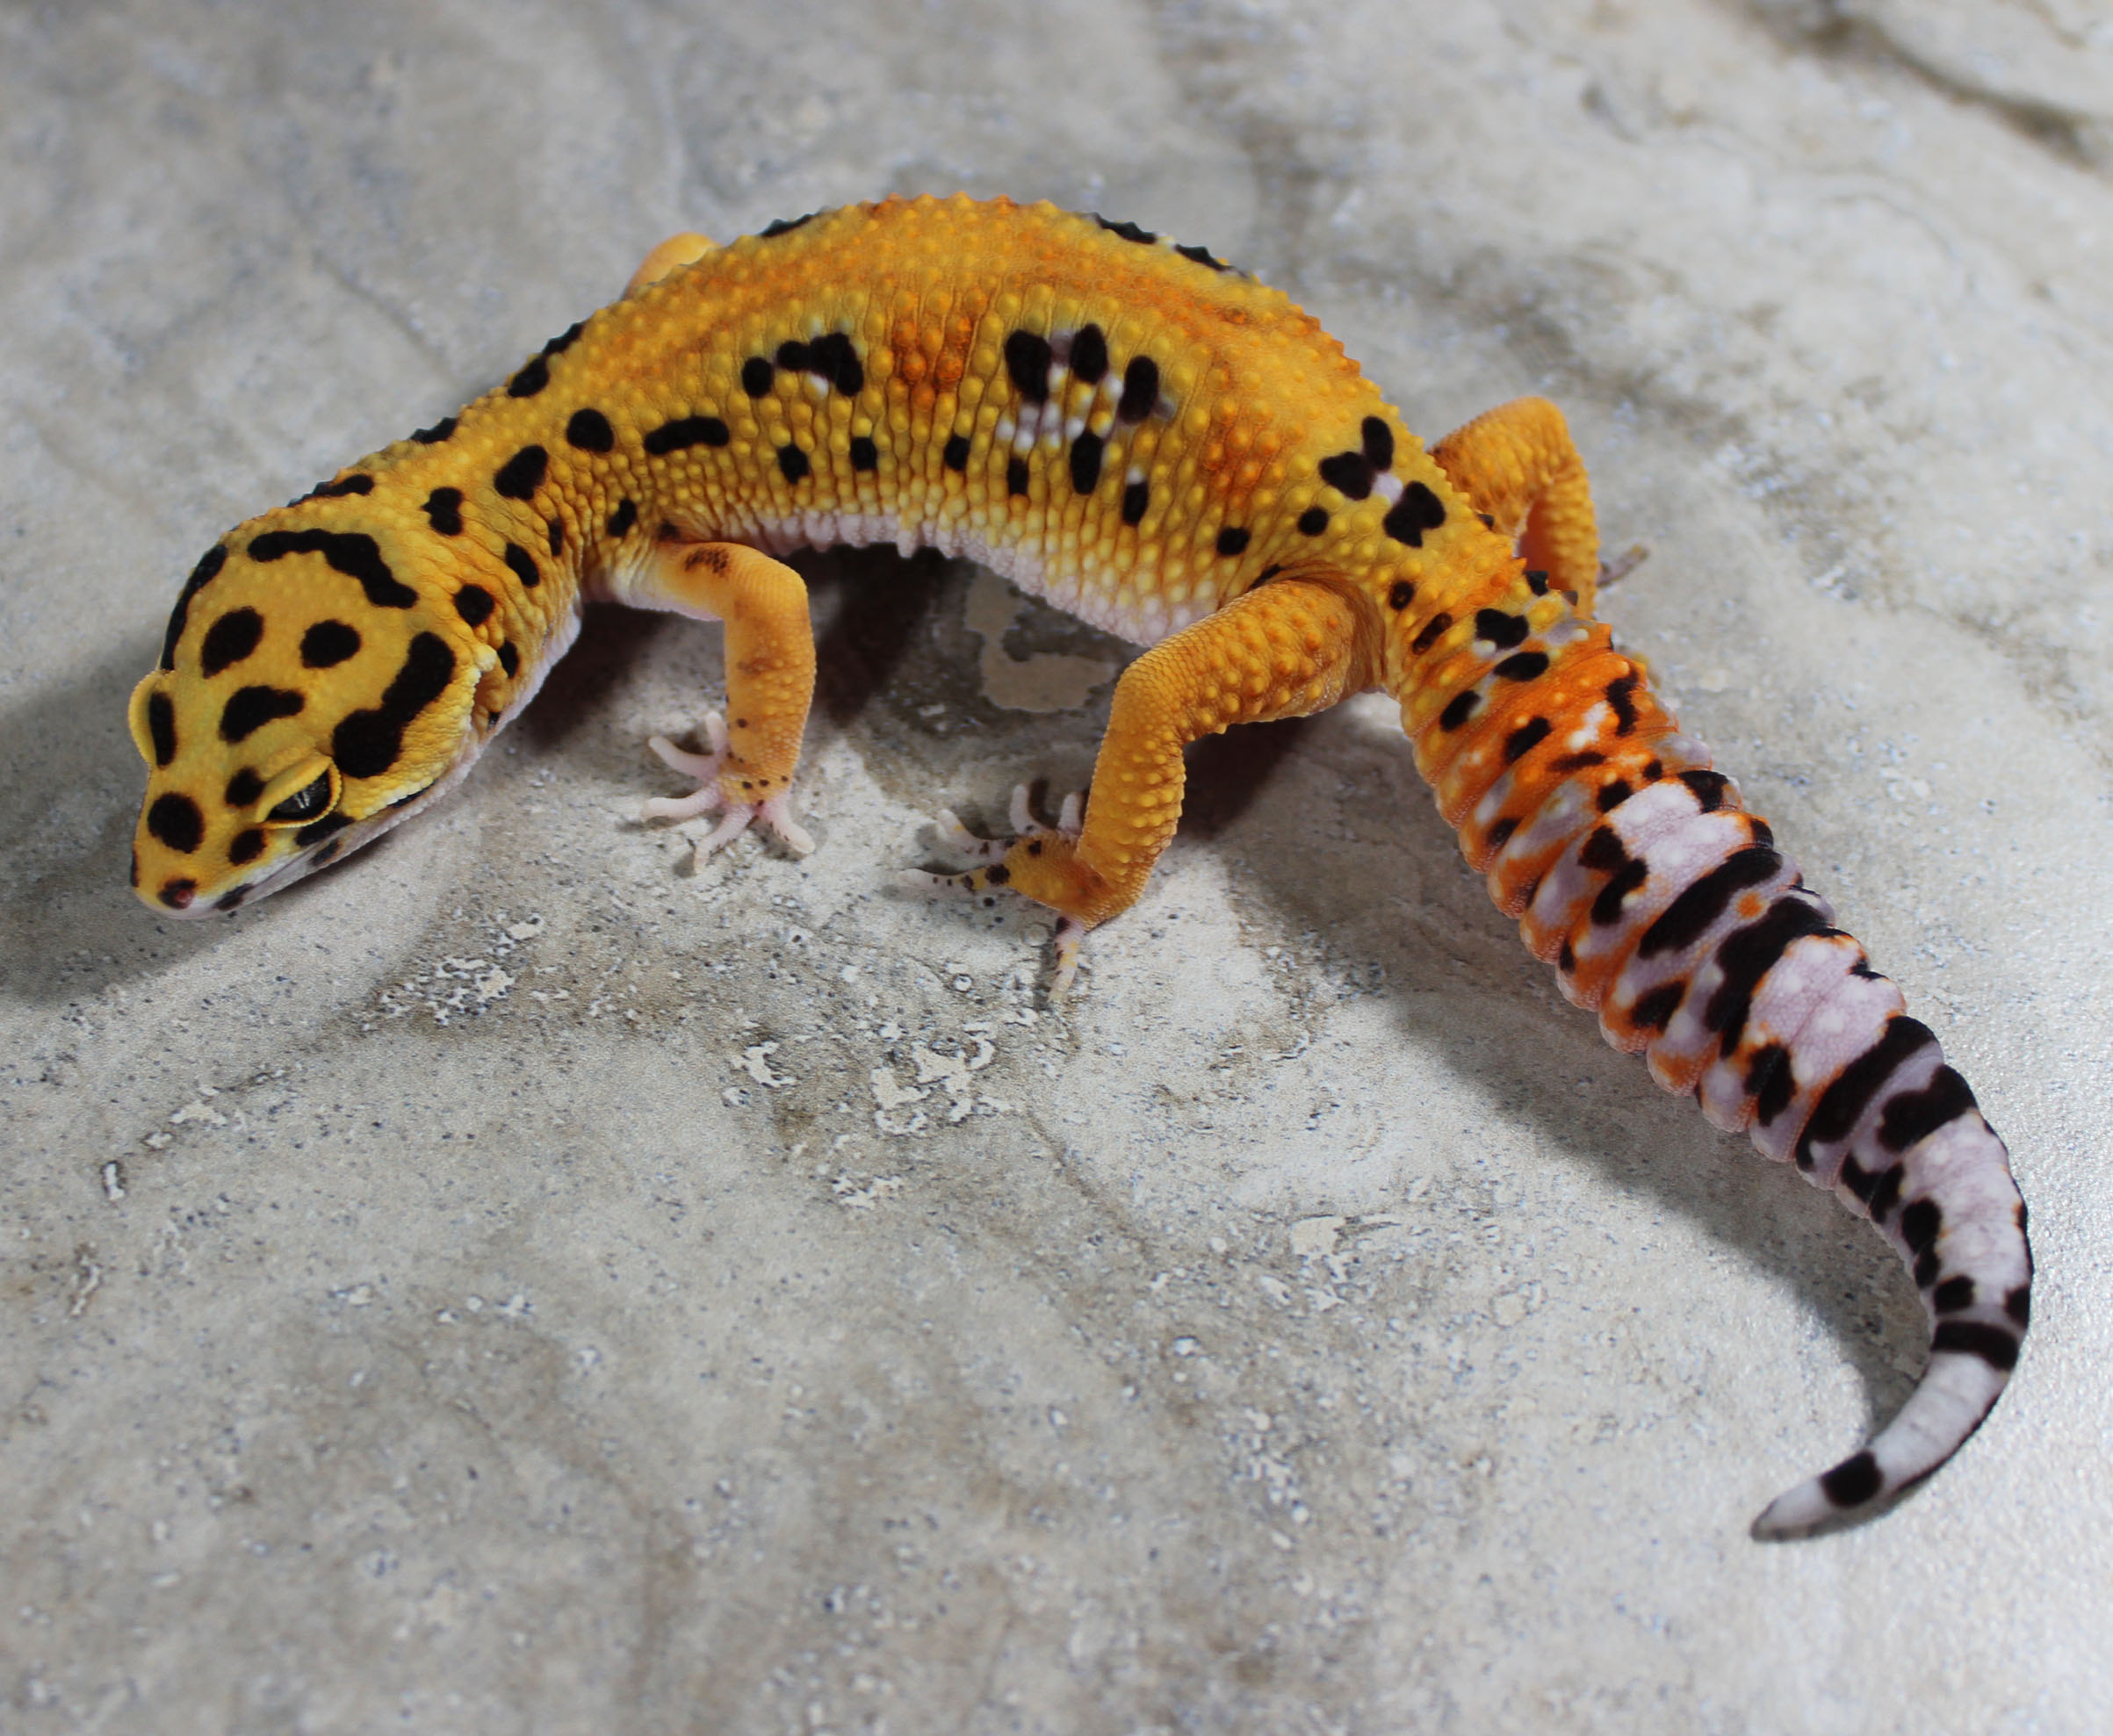 Firebold Leopard Gecko by Lunation Geckos